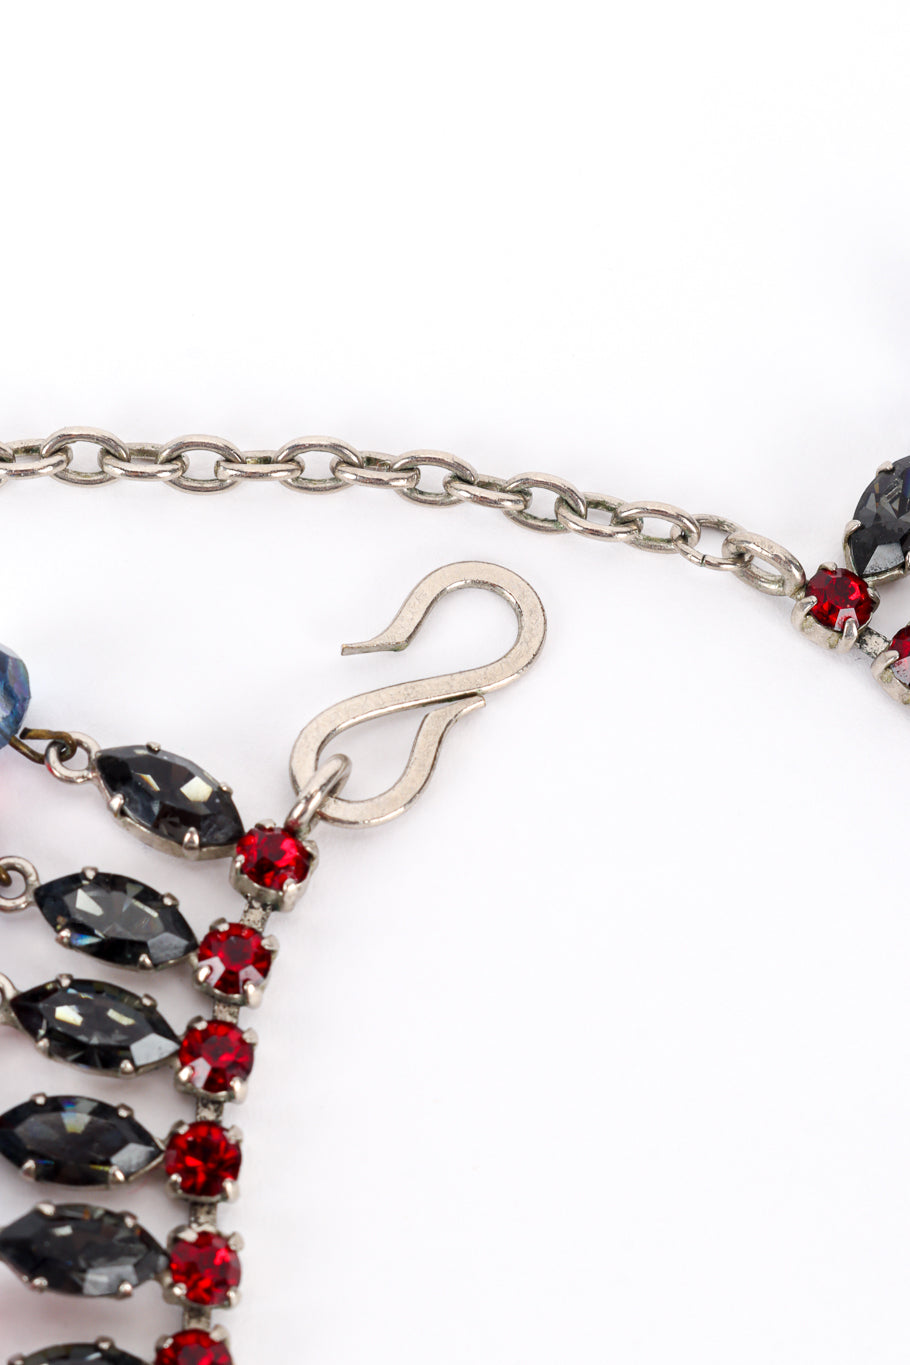 Vintage Beaded Dangle Crystal Collar Necklace hook clasp @recess la